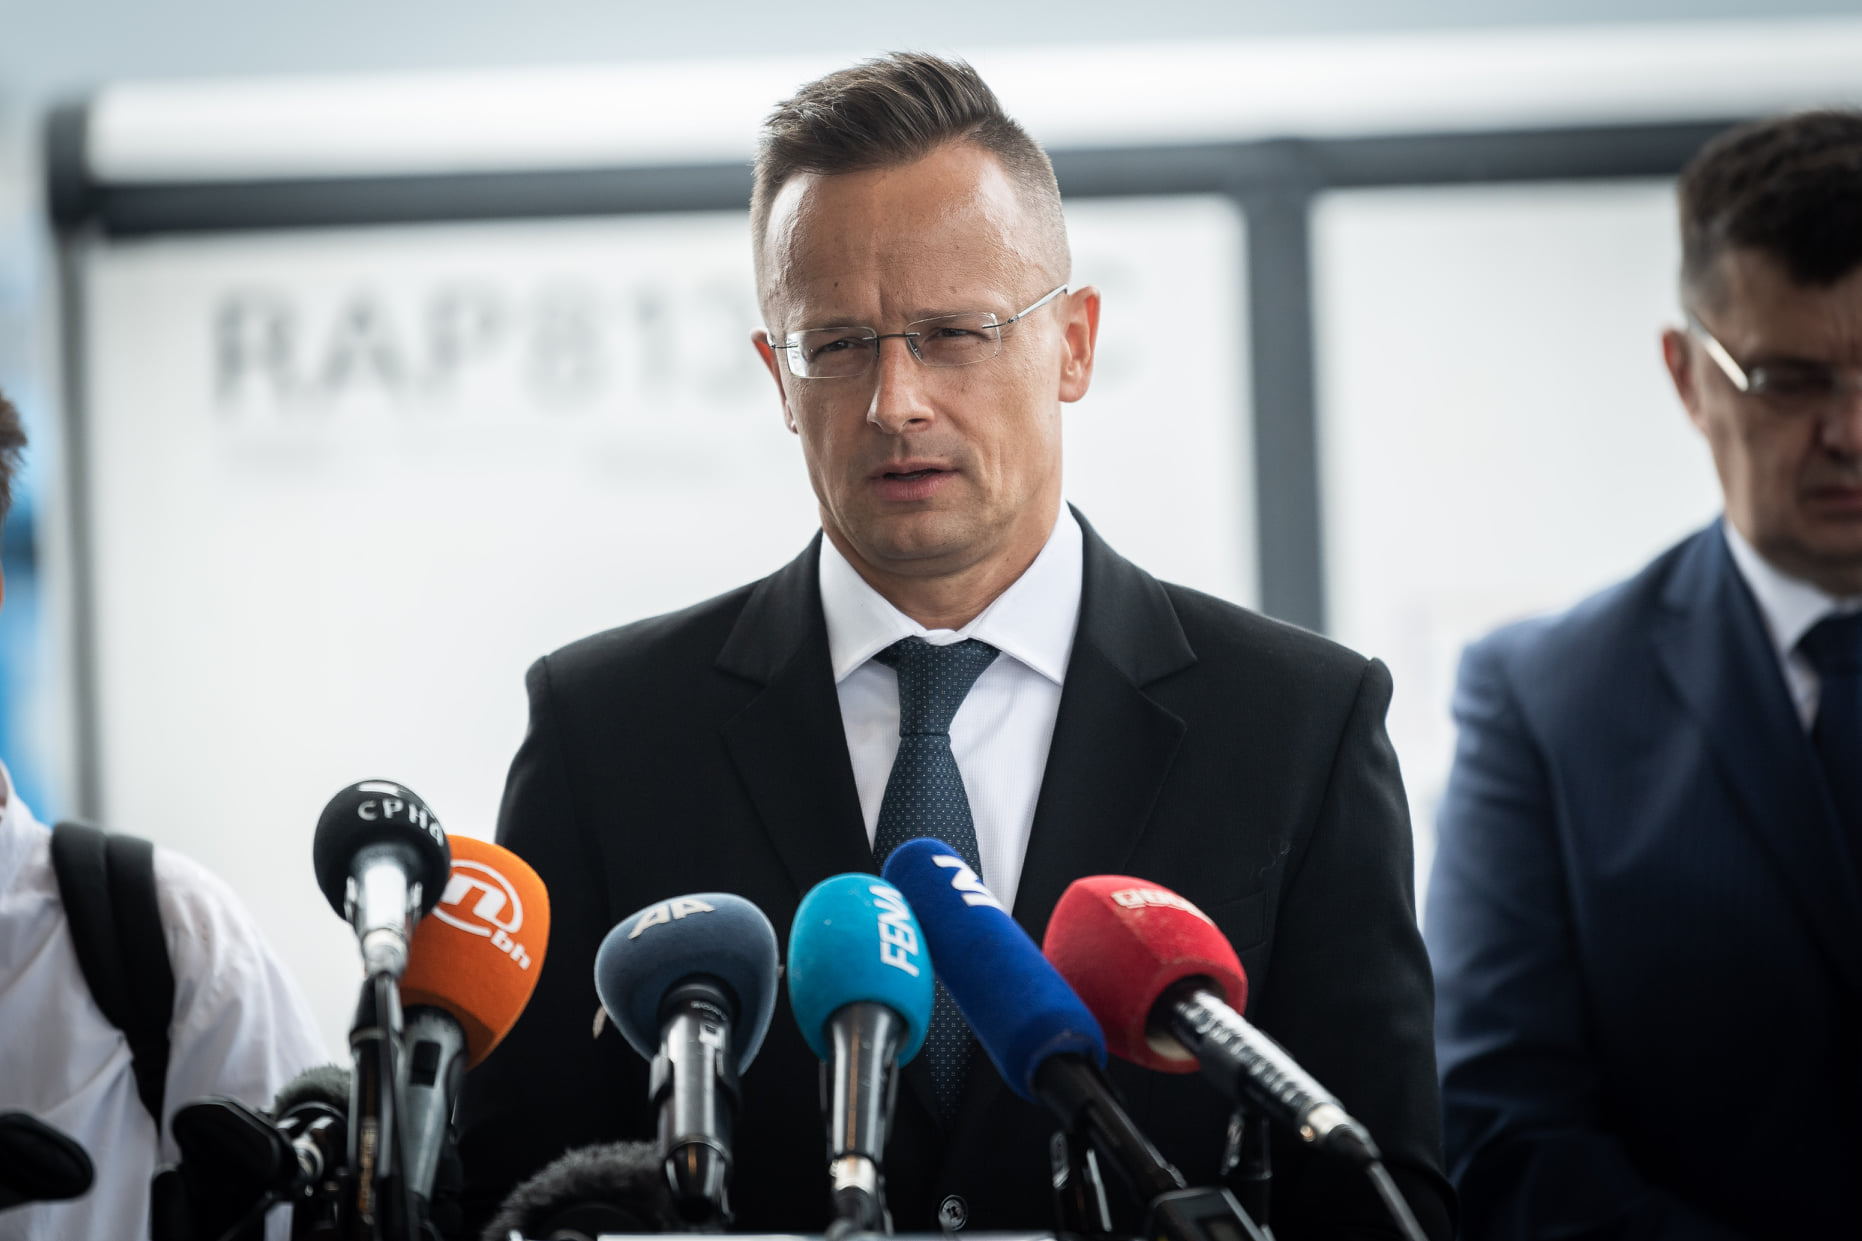 FM Szijjártó: Govt Rejects Doubts over Hungary's Democratic Nature